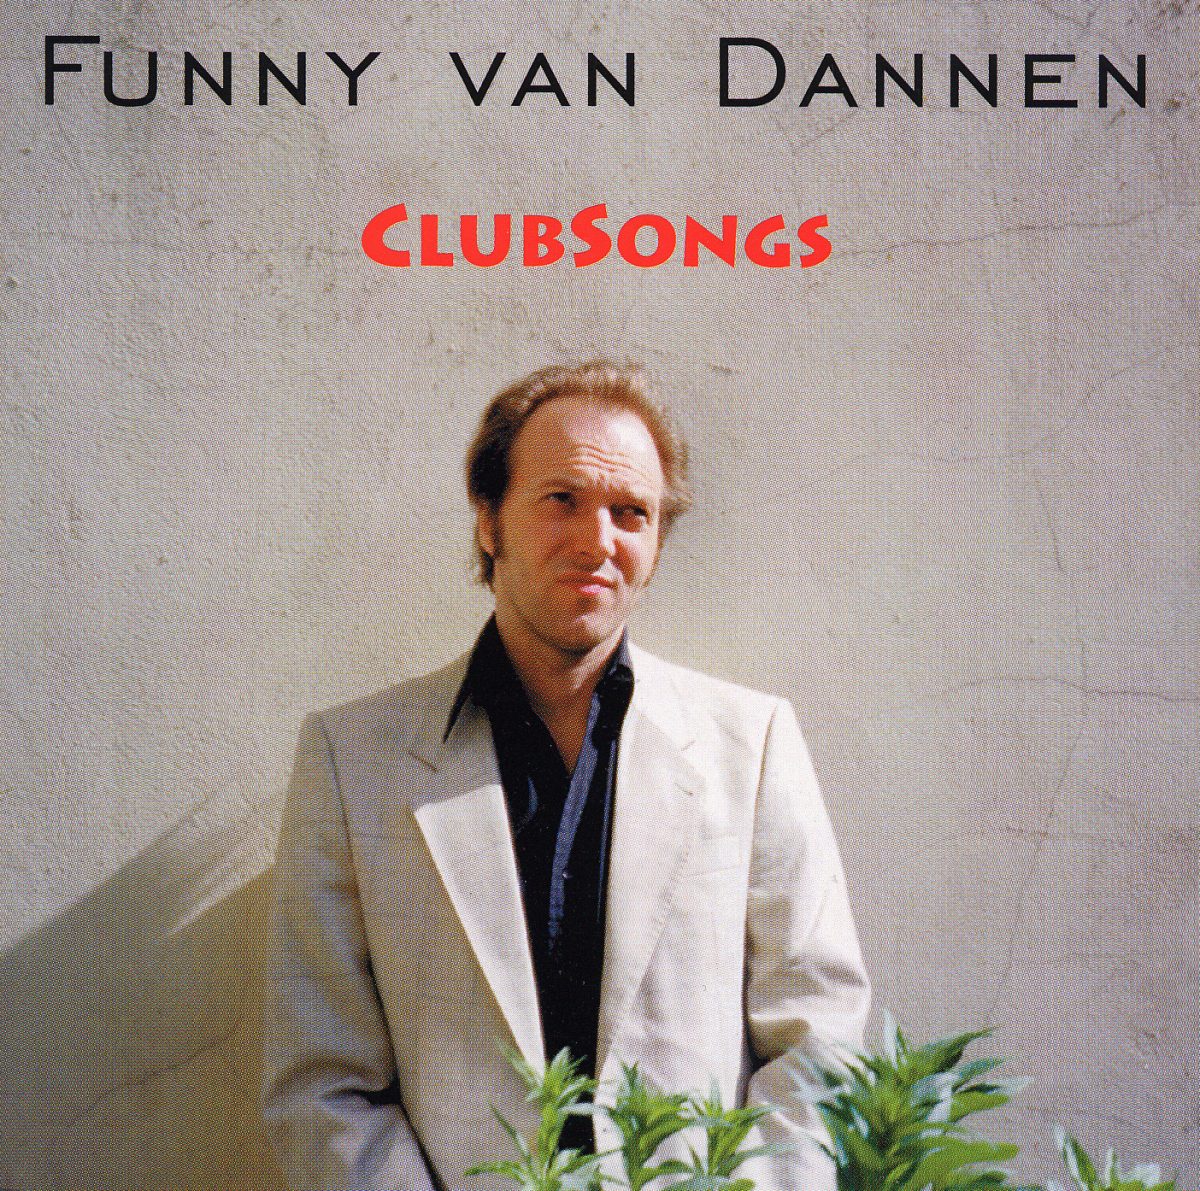 Funny van Dannen - Clubsongs